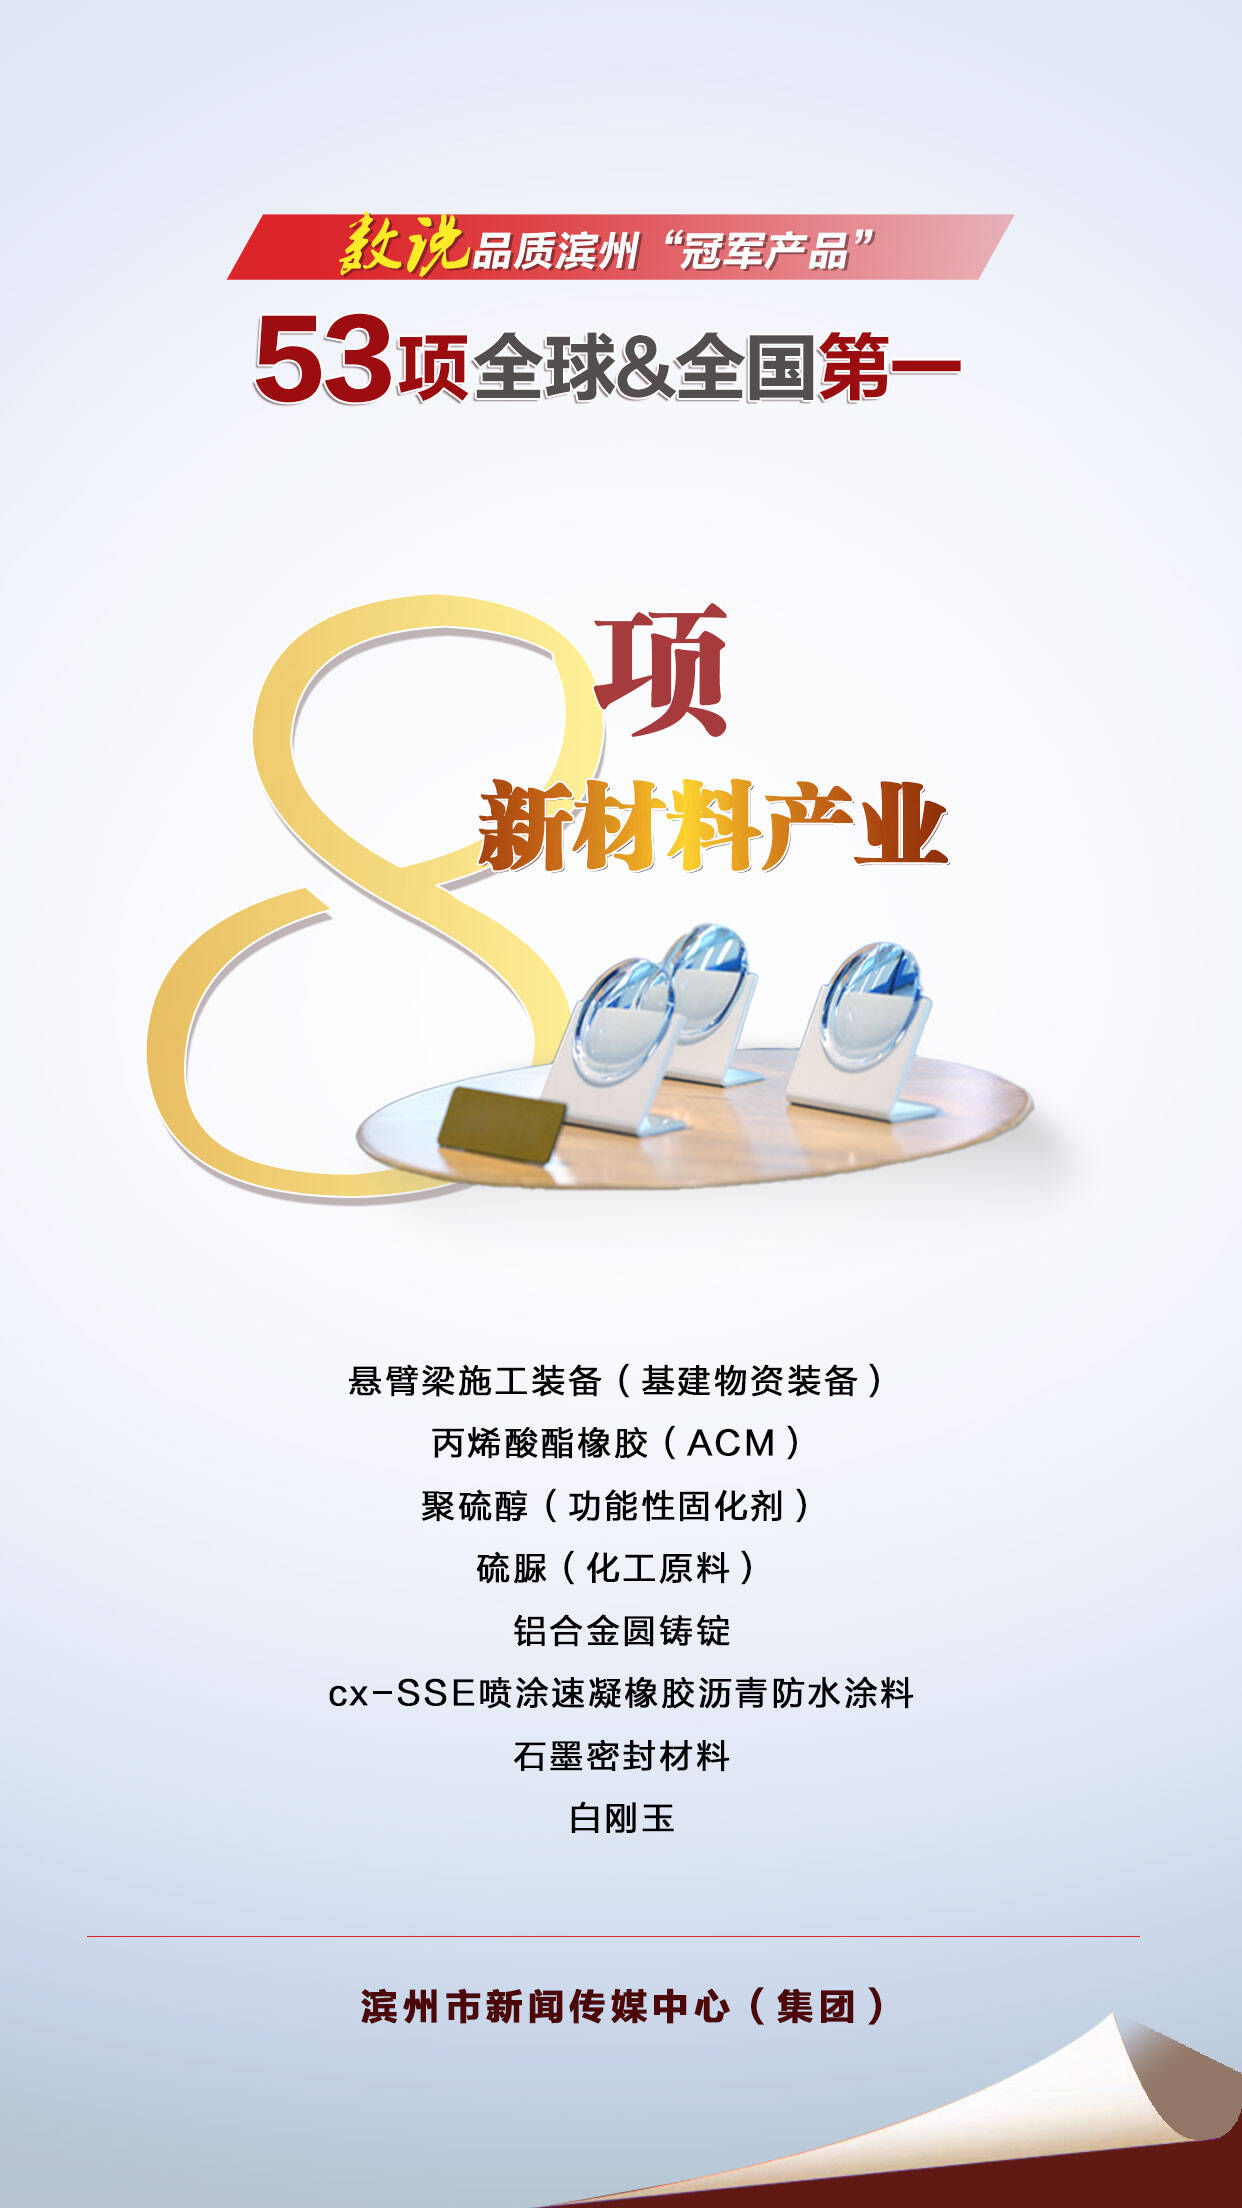 数说品质滨州“冠军产品” 53项全球全国第一 | 8项新材料产业(图1)